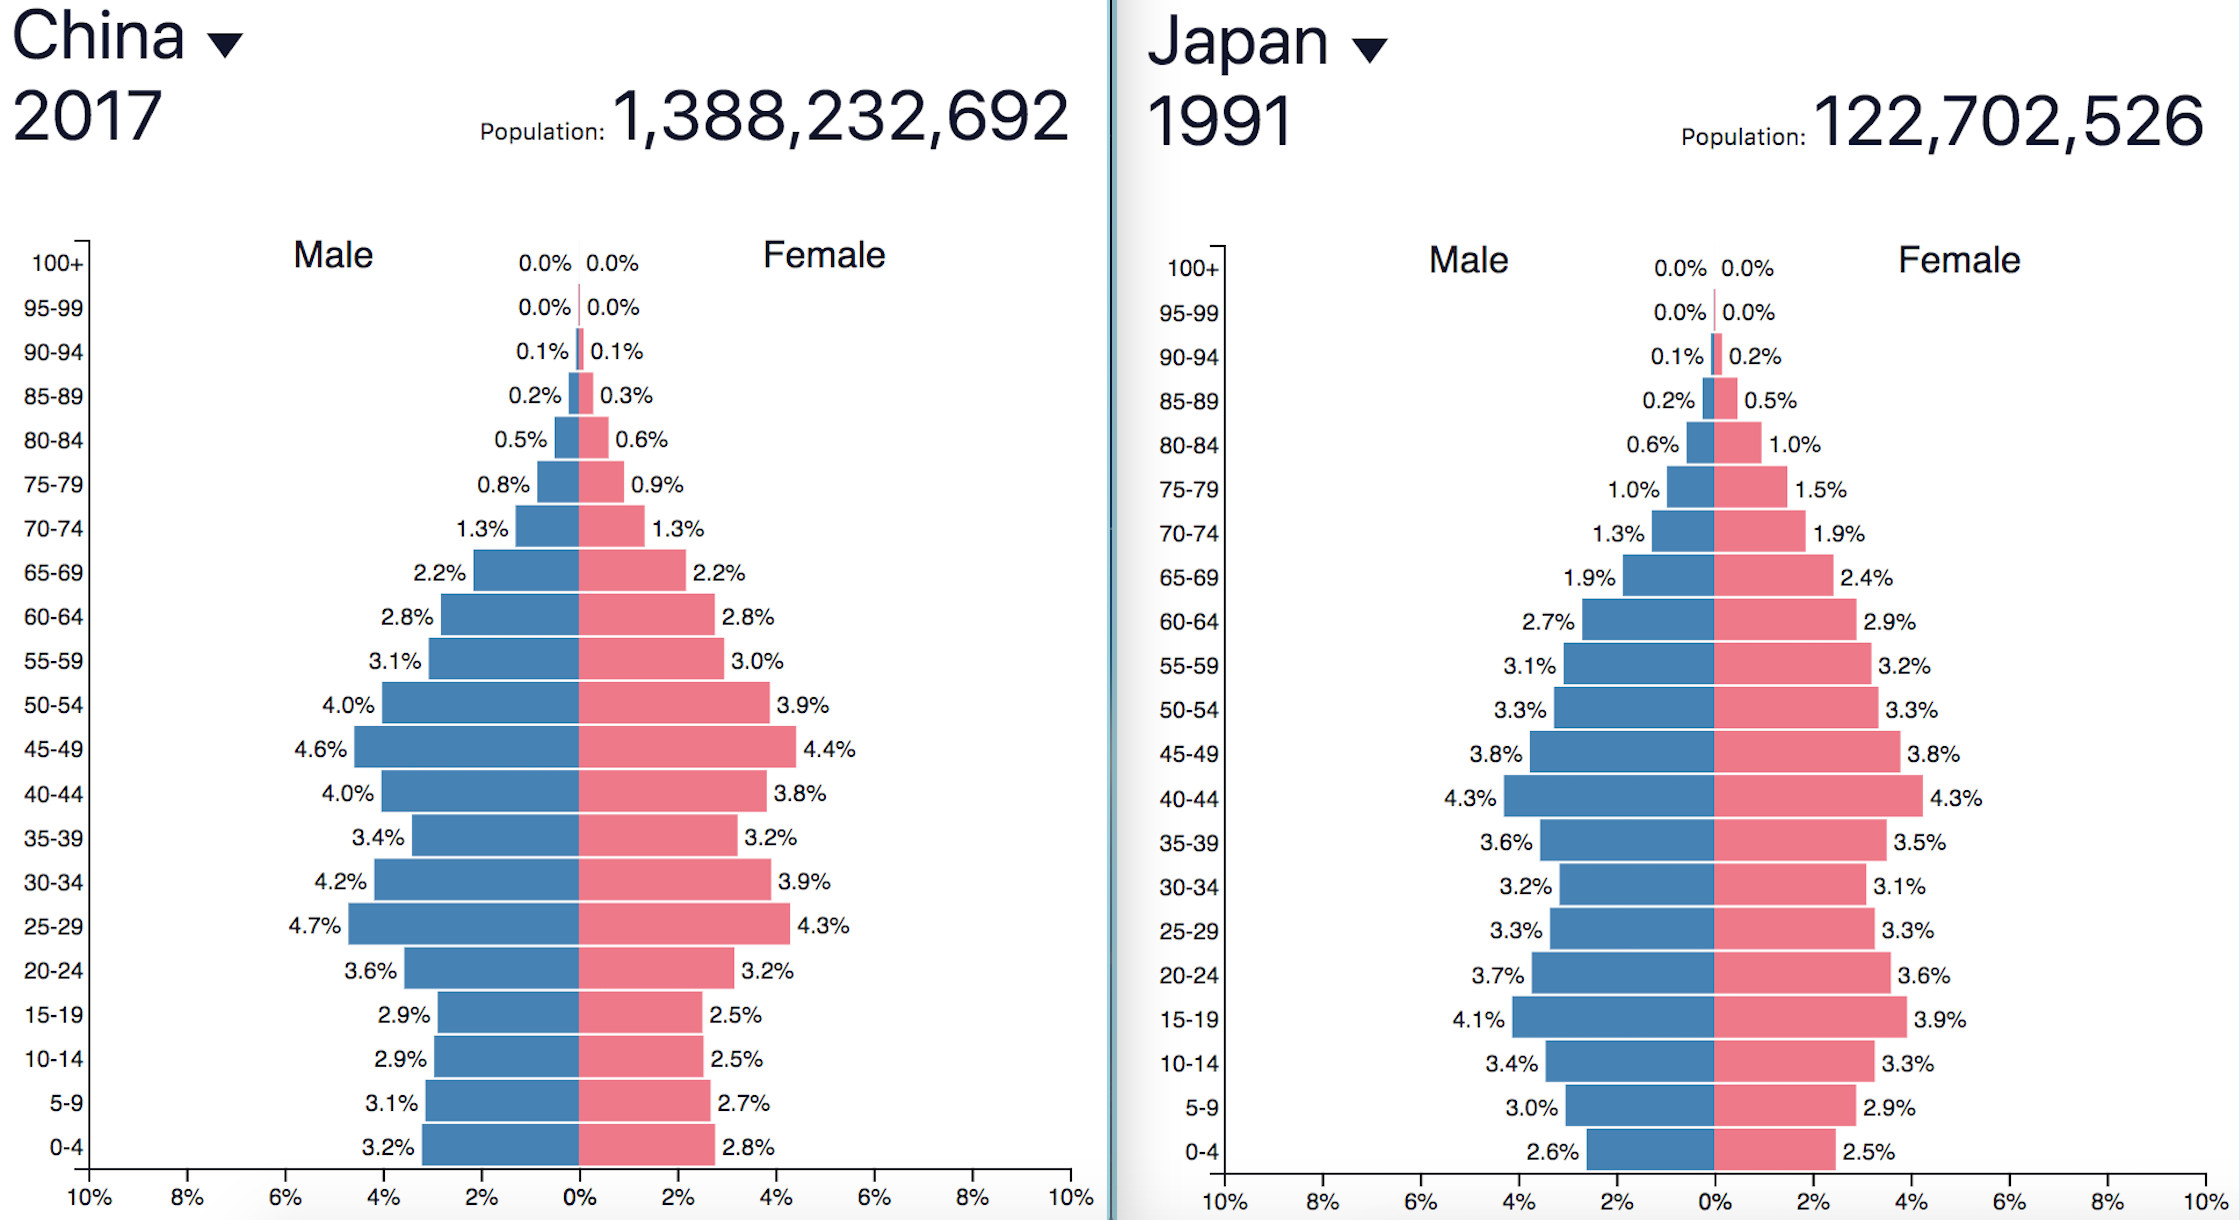 人口结构:2017年中国 vs 1991年日本